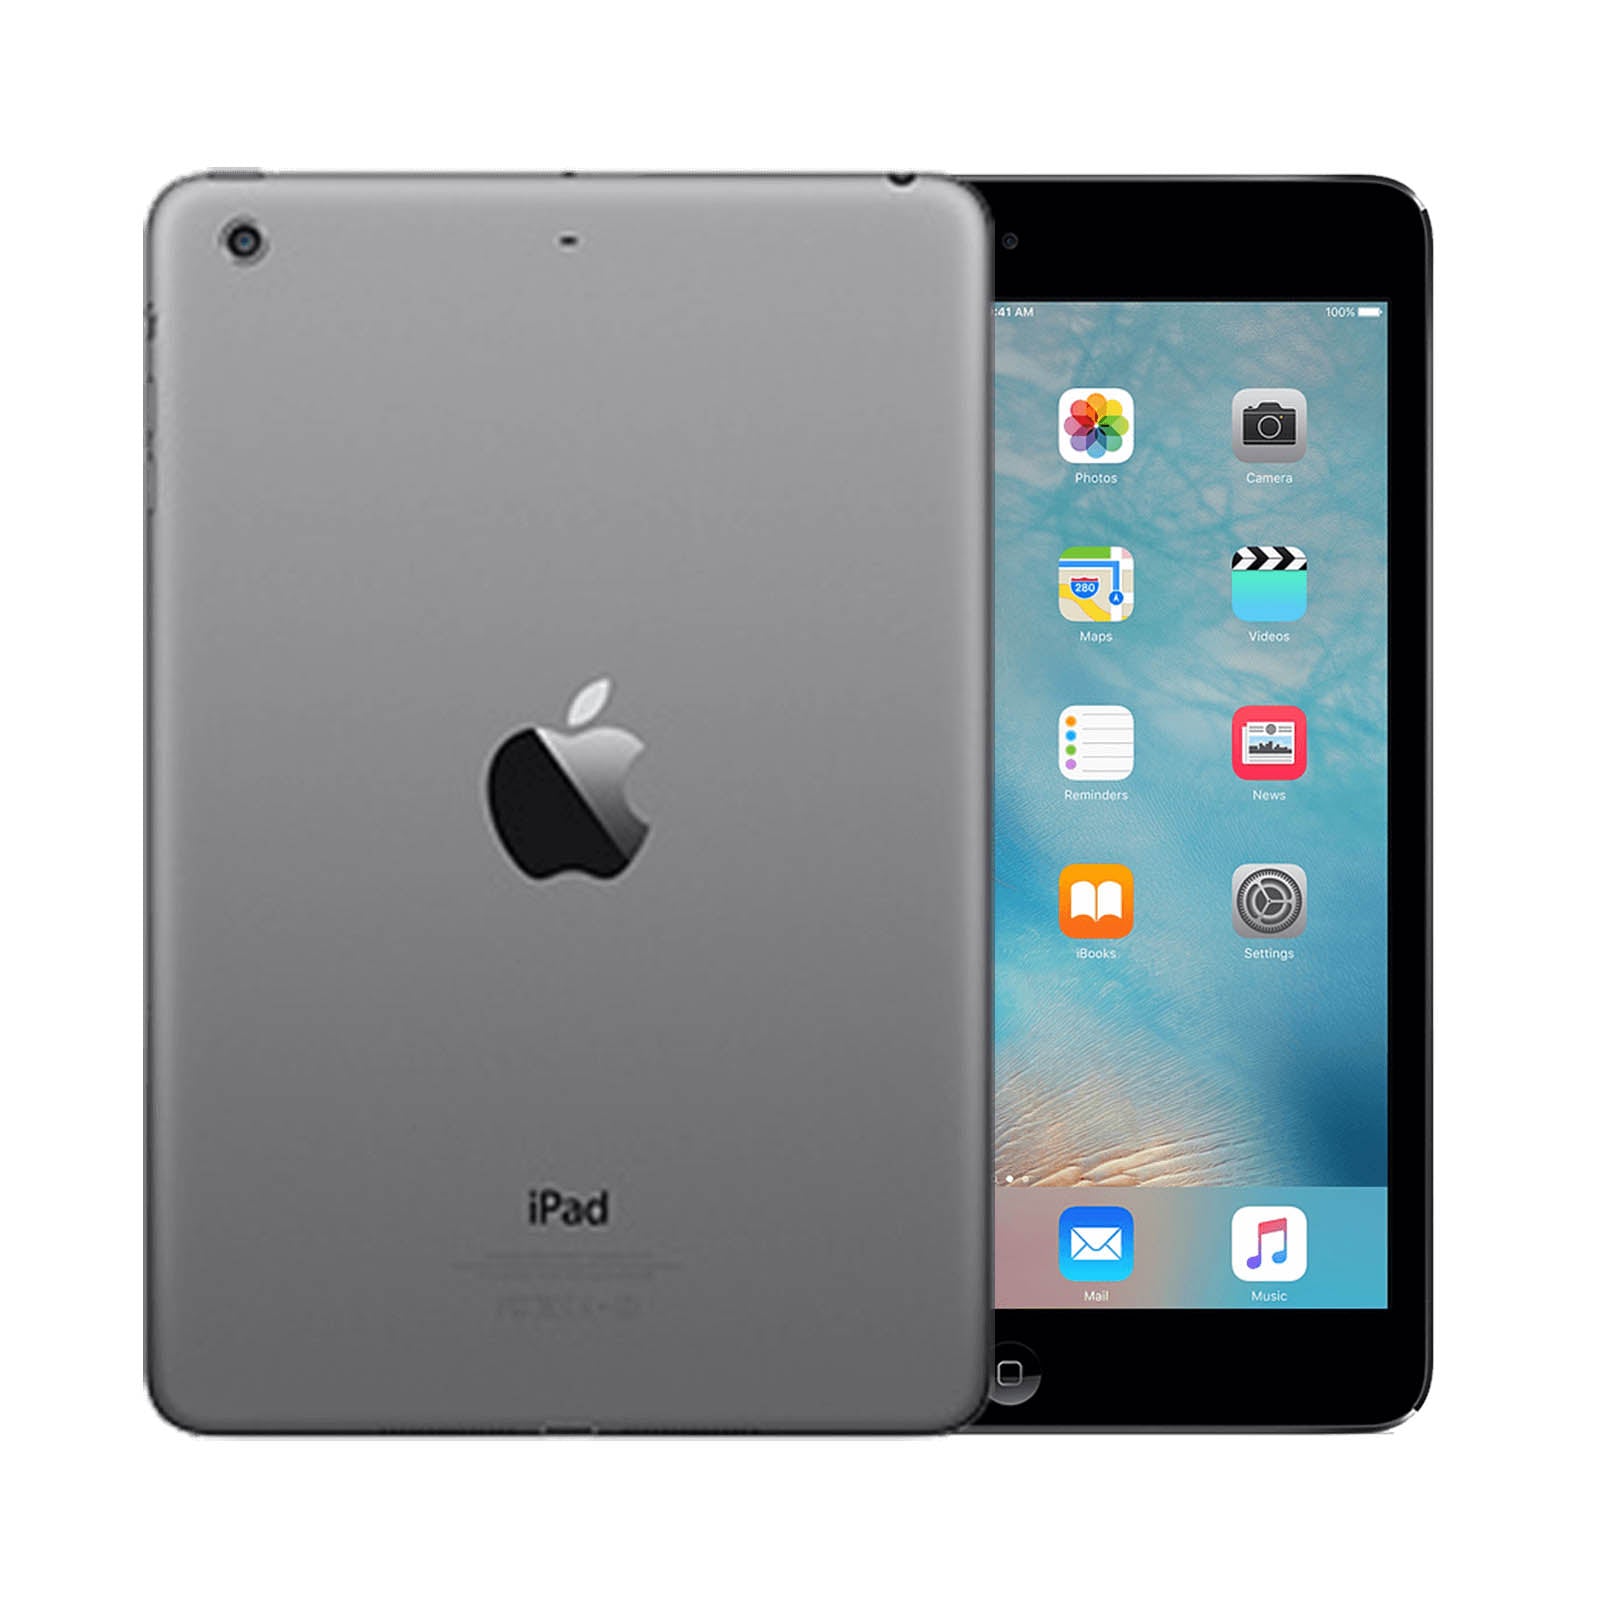 Apple iPad mini 2 16GB Black Good - Unlocked